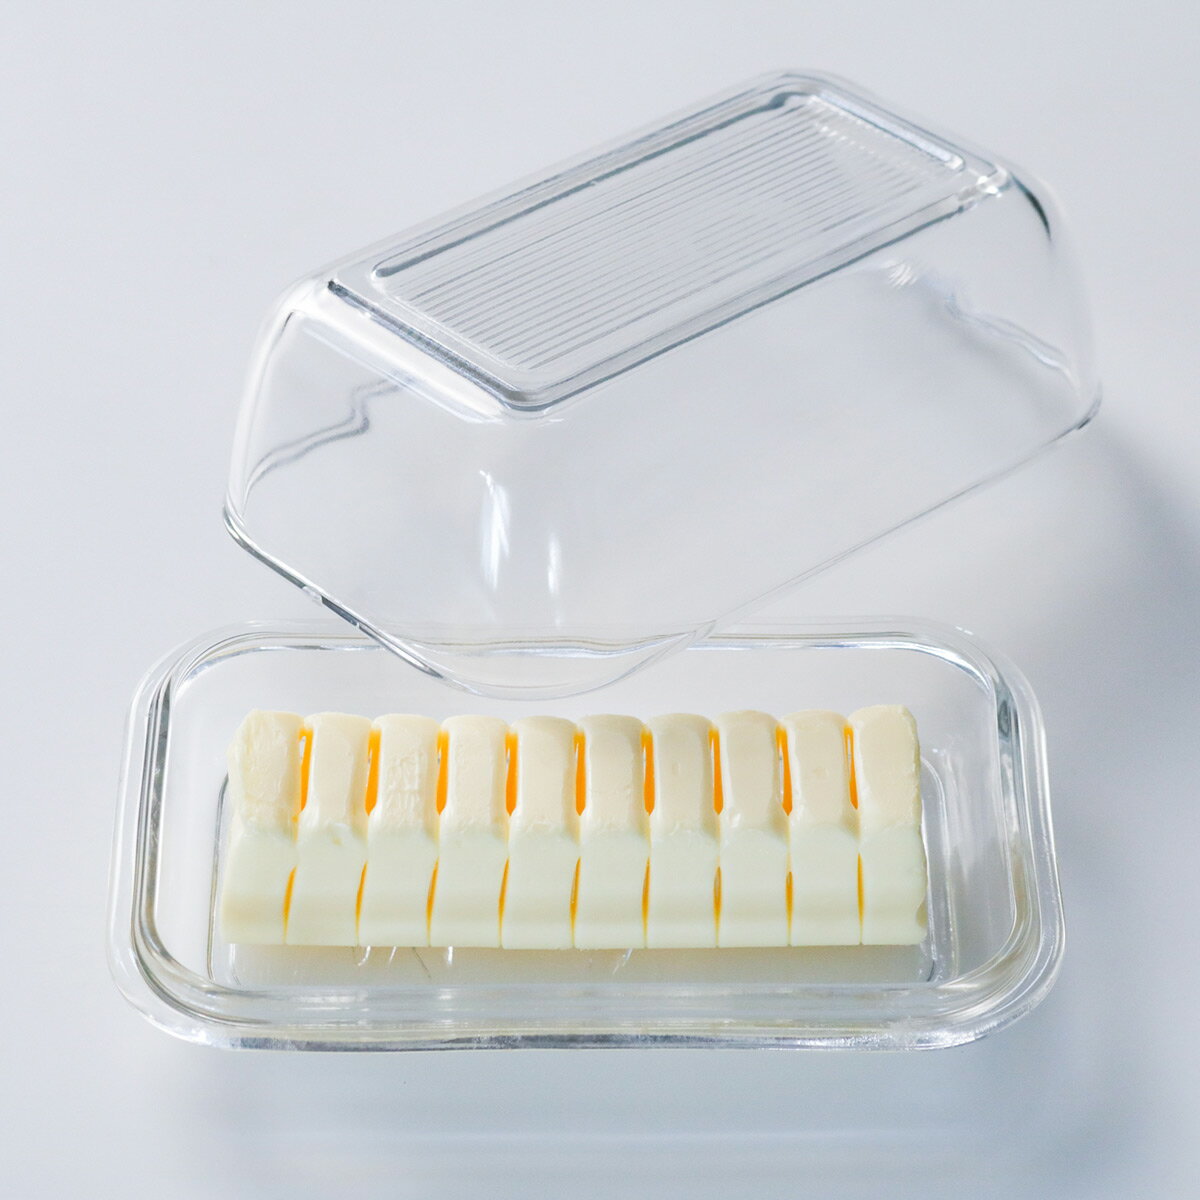 バター ケース 牛レリーフ Luminarc （ リュミナルク ガラス 200g用 バター容器 バター保存 バター入れ 保存容器 200g キッチン 収納 バター 保存 ケース 小物ケース 小物入れ ） 【3980円以上送料無料】